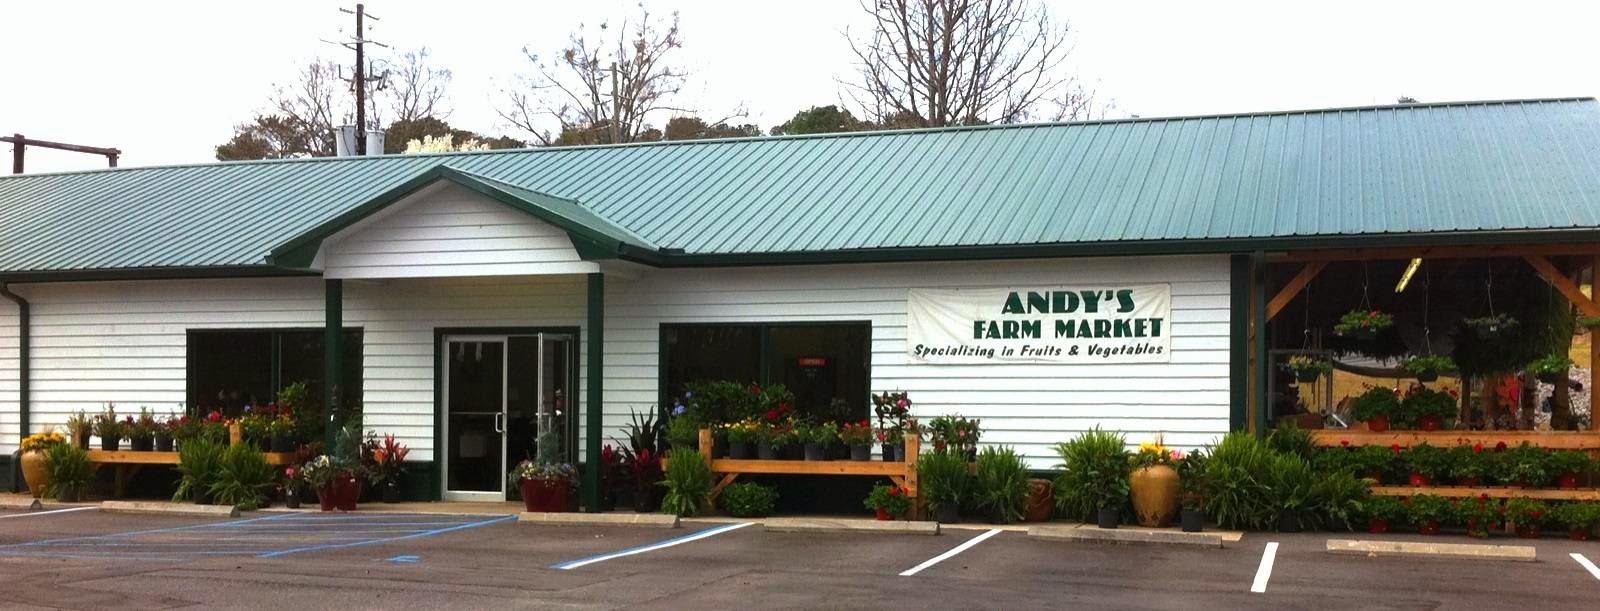 Andy's Farm Market & Garden Center